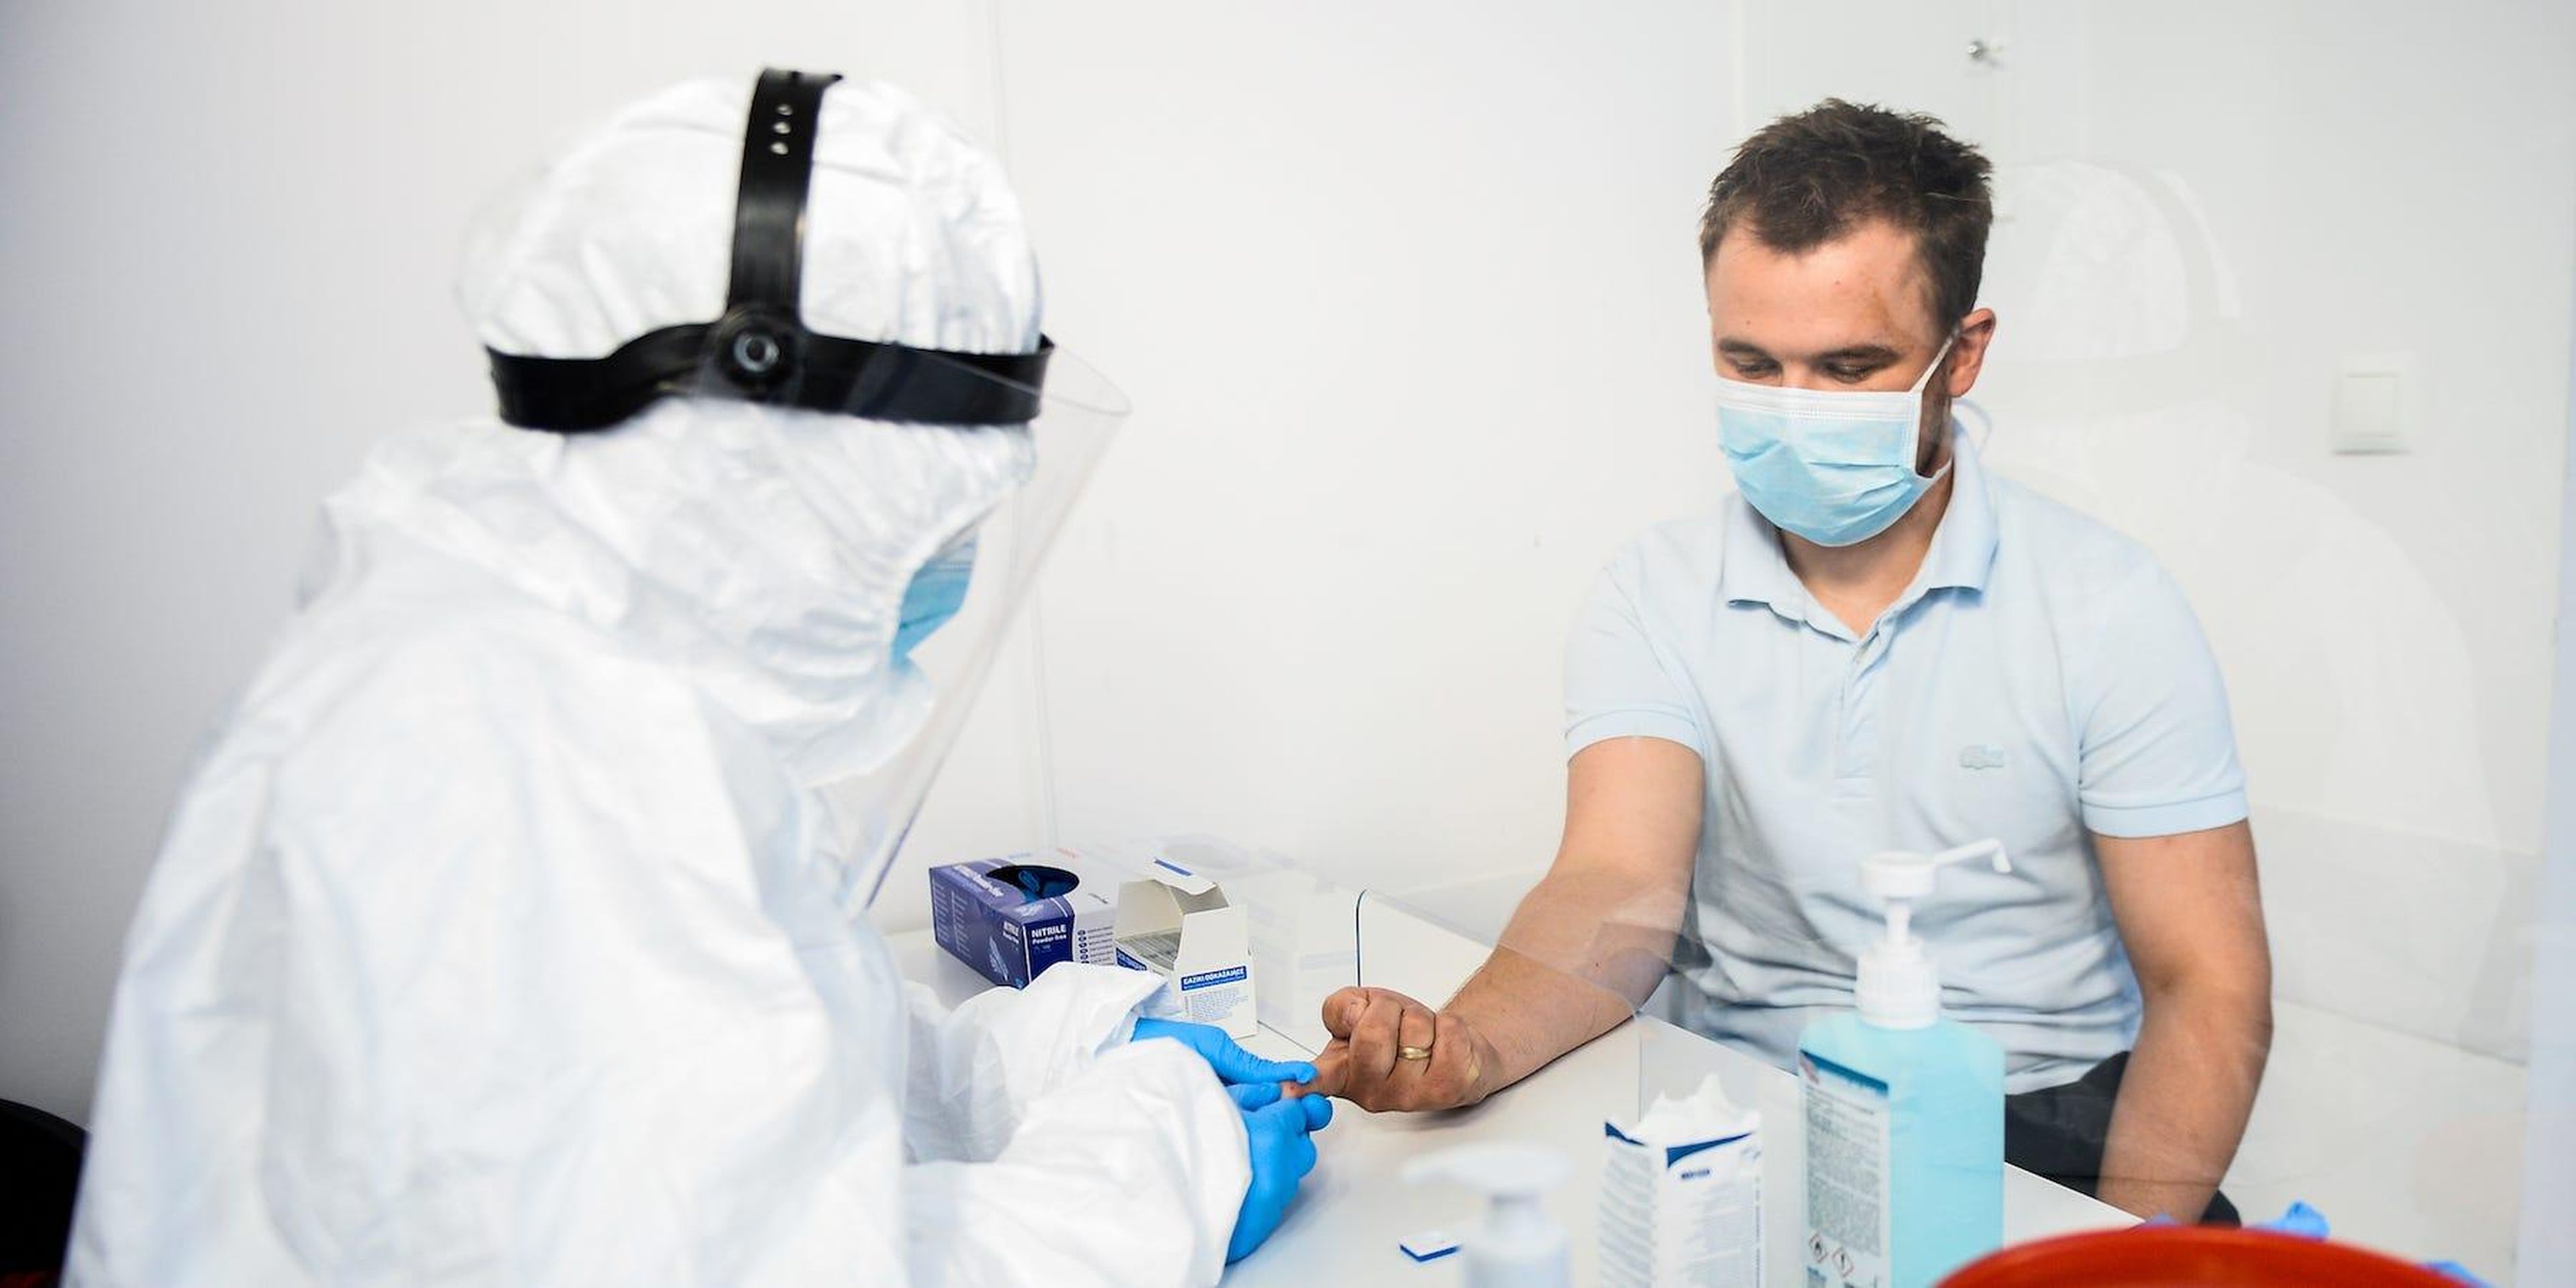 Un trabajador de la salud extrae sangre para realizar una prueba de anticuerpos para COVID-19 en el Hospital Dworska, en Cracovia, Polonia, el 9 de abril de 2020.